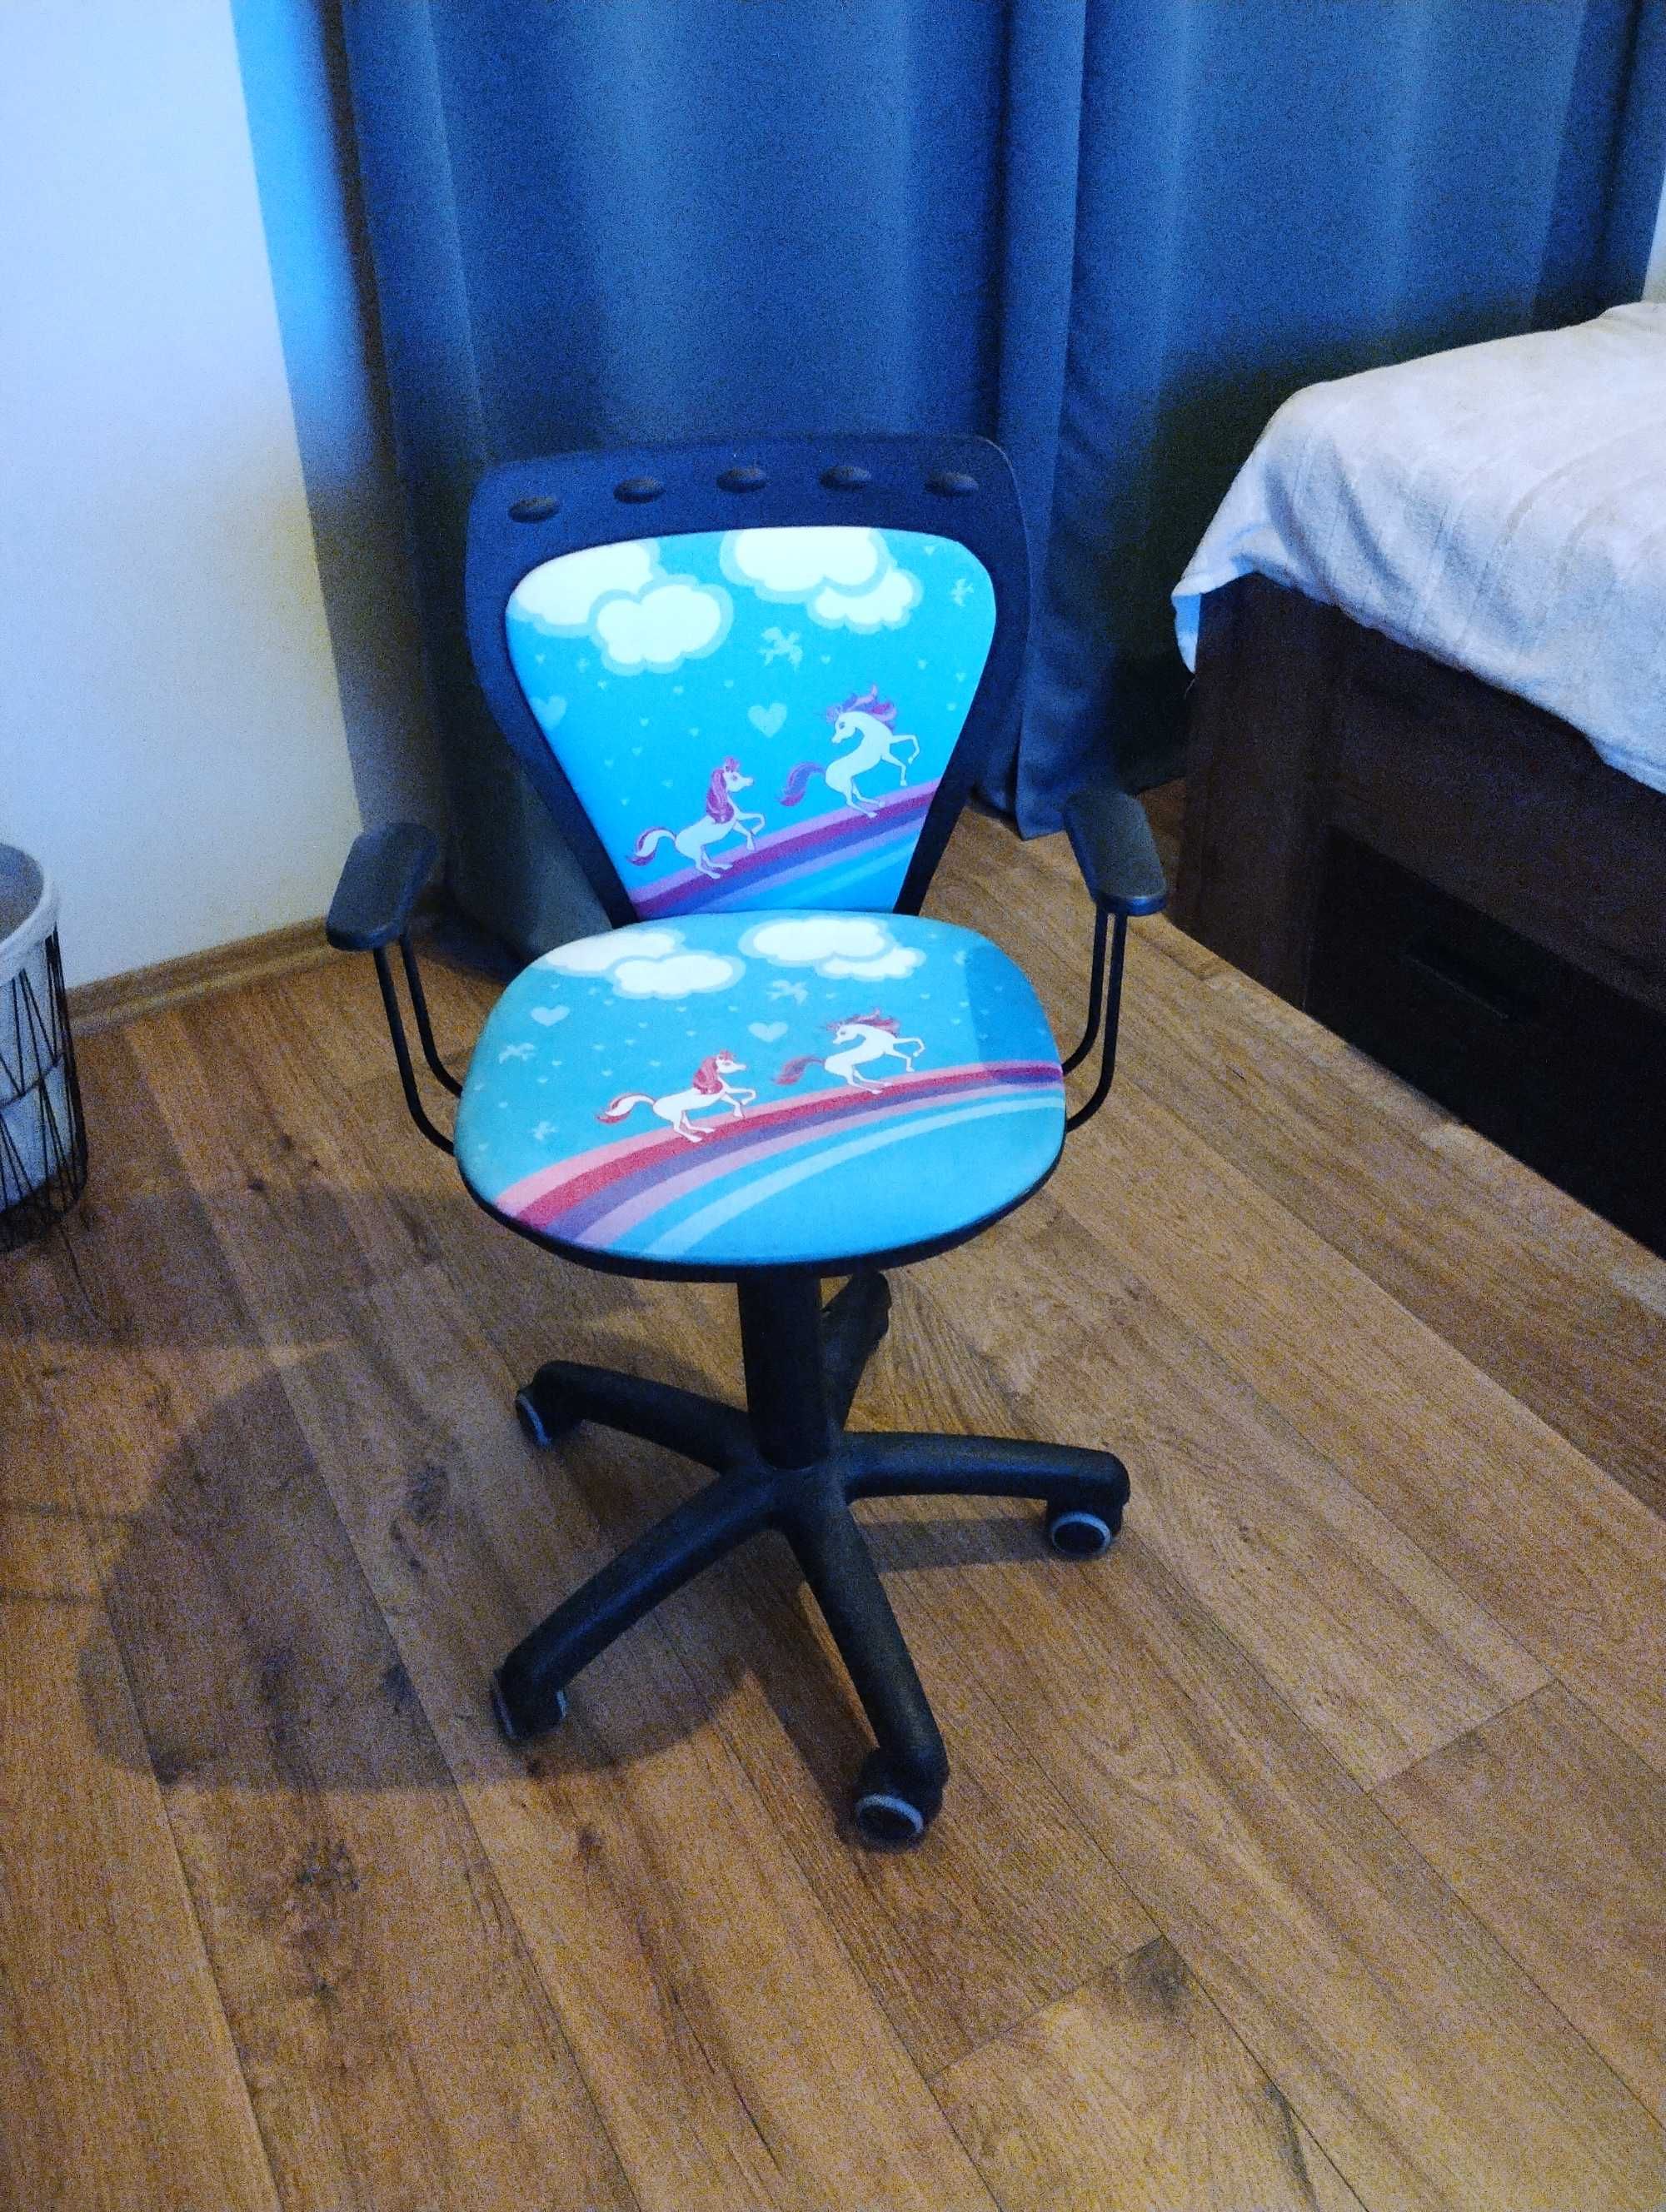 Krzesło biurowe dziecięce